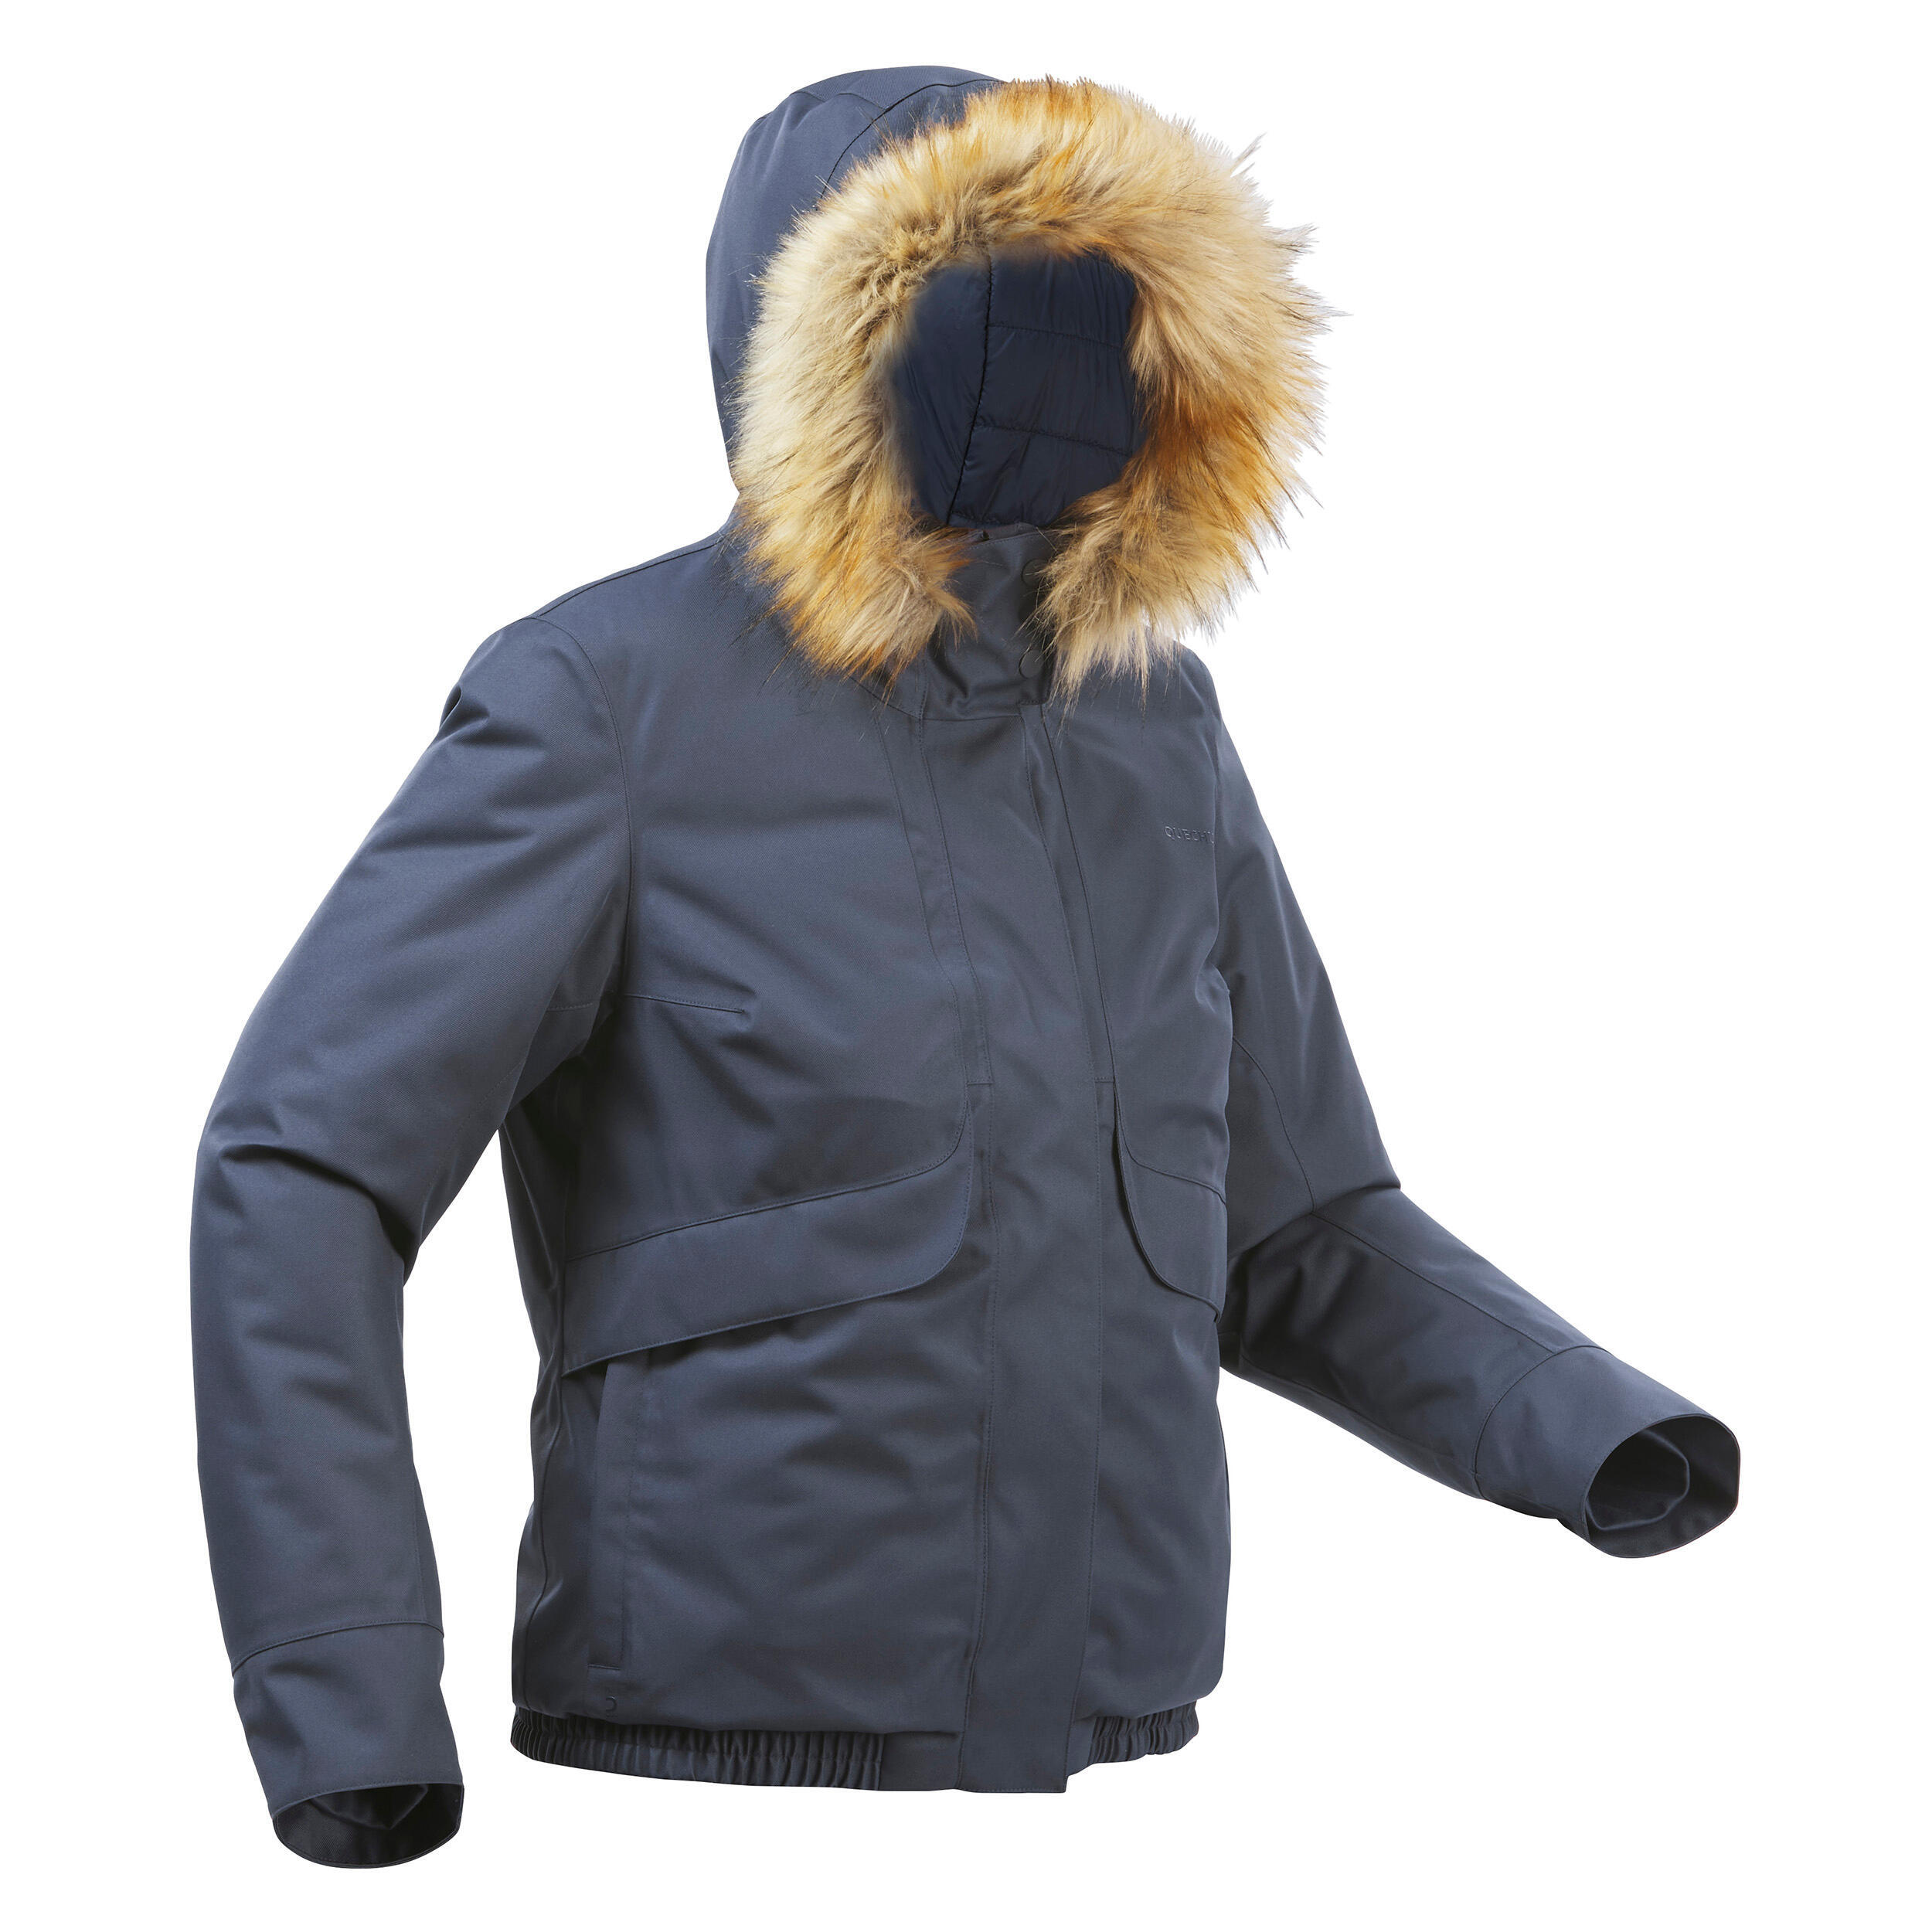 Women’s waterproof winter hiking jacket - SH500 -8°C 4/14